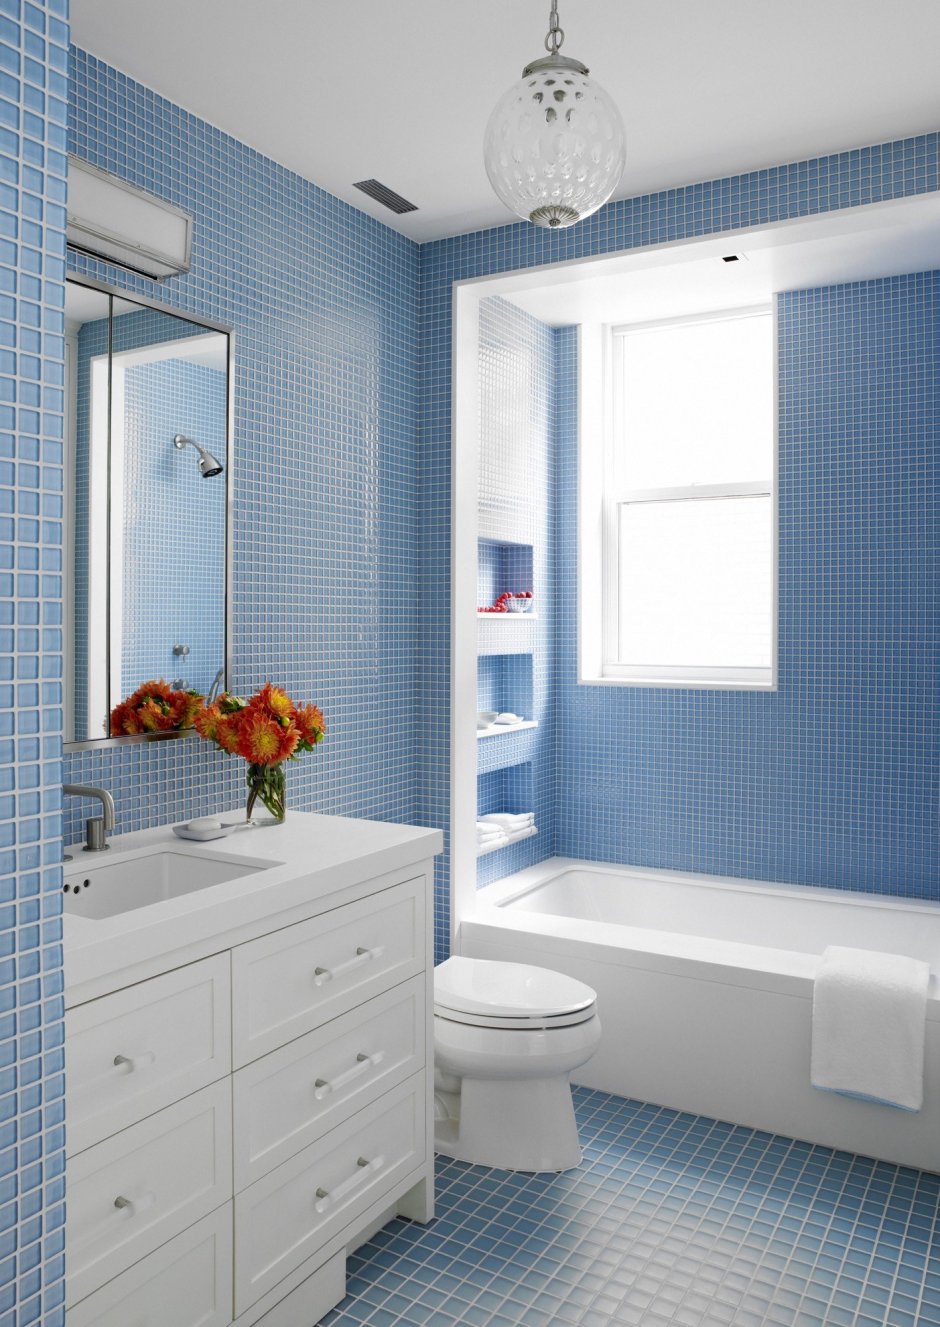 Ванная комната в бело голубых тонах